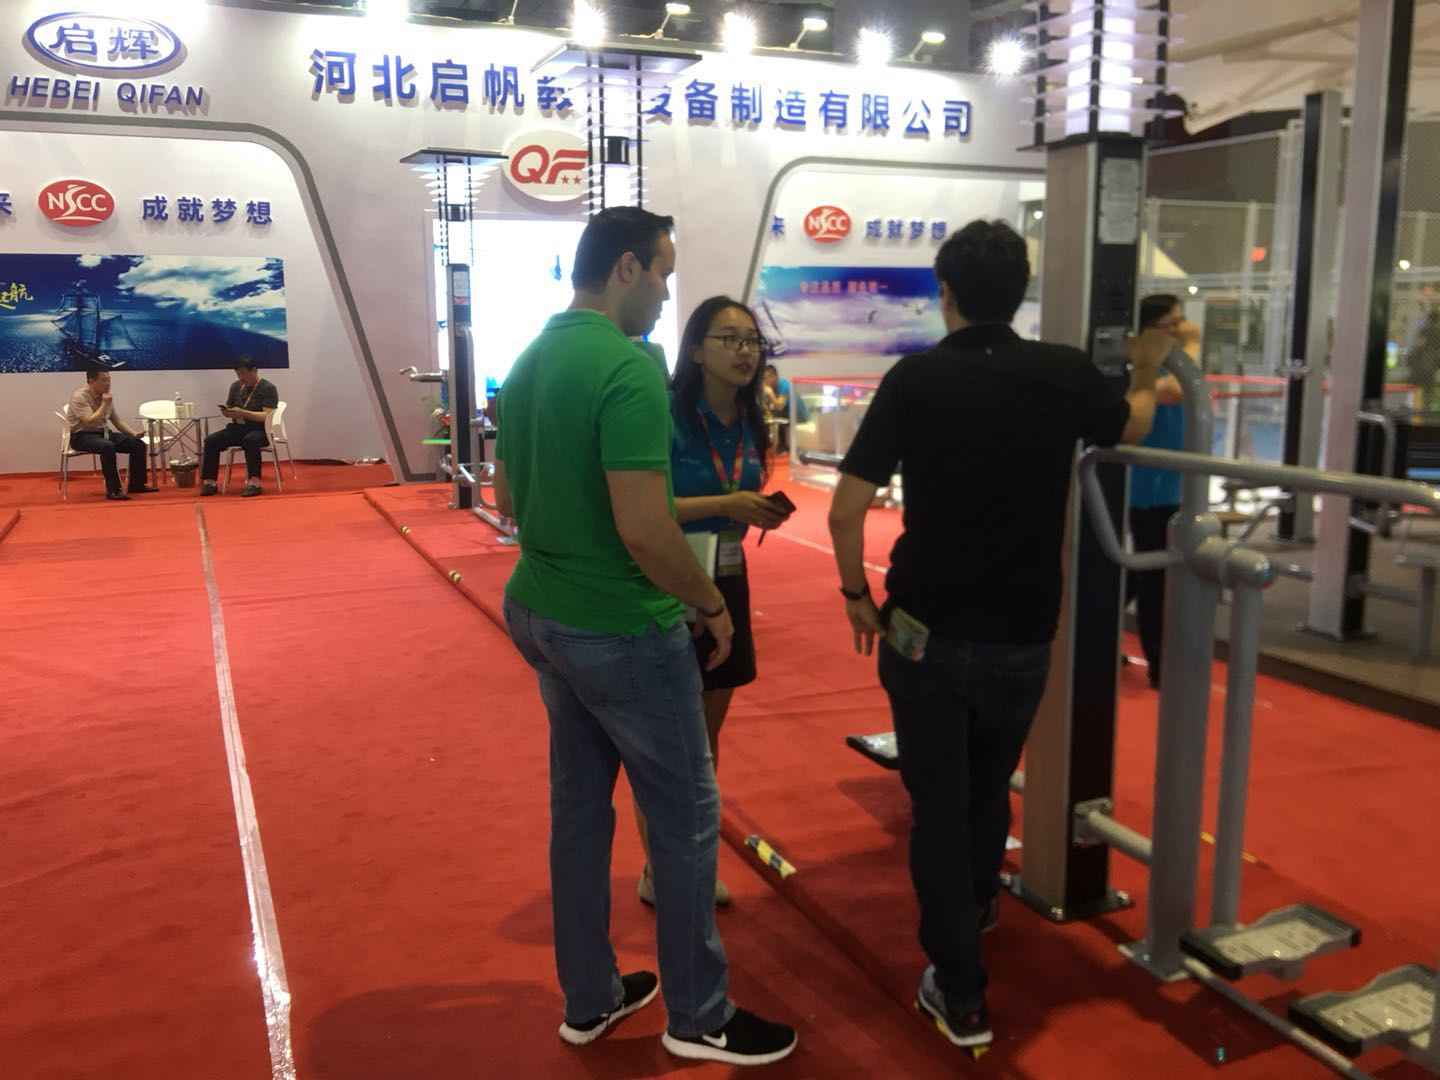 2018 China(shanghai) Sport Show,Qifan in Shanghai!